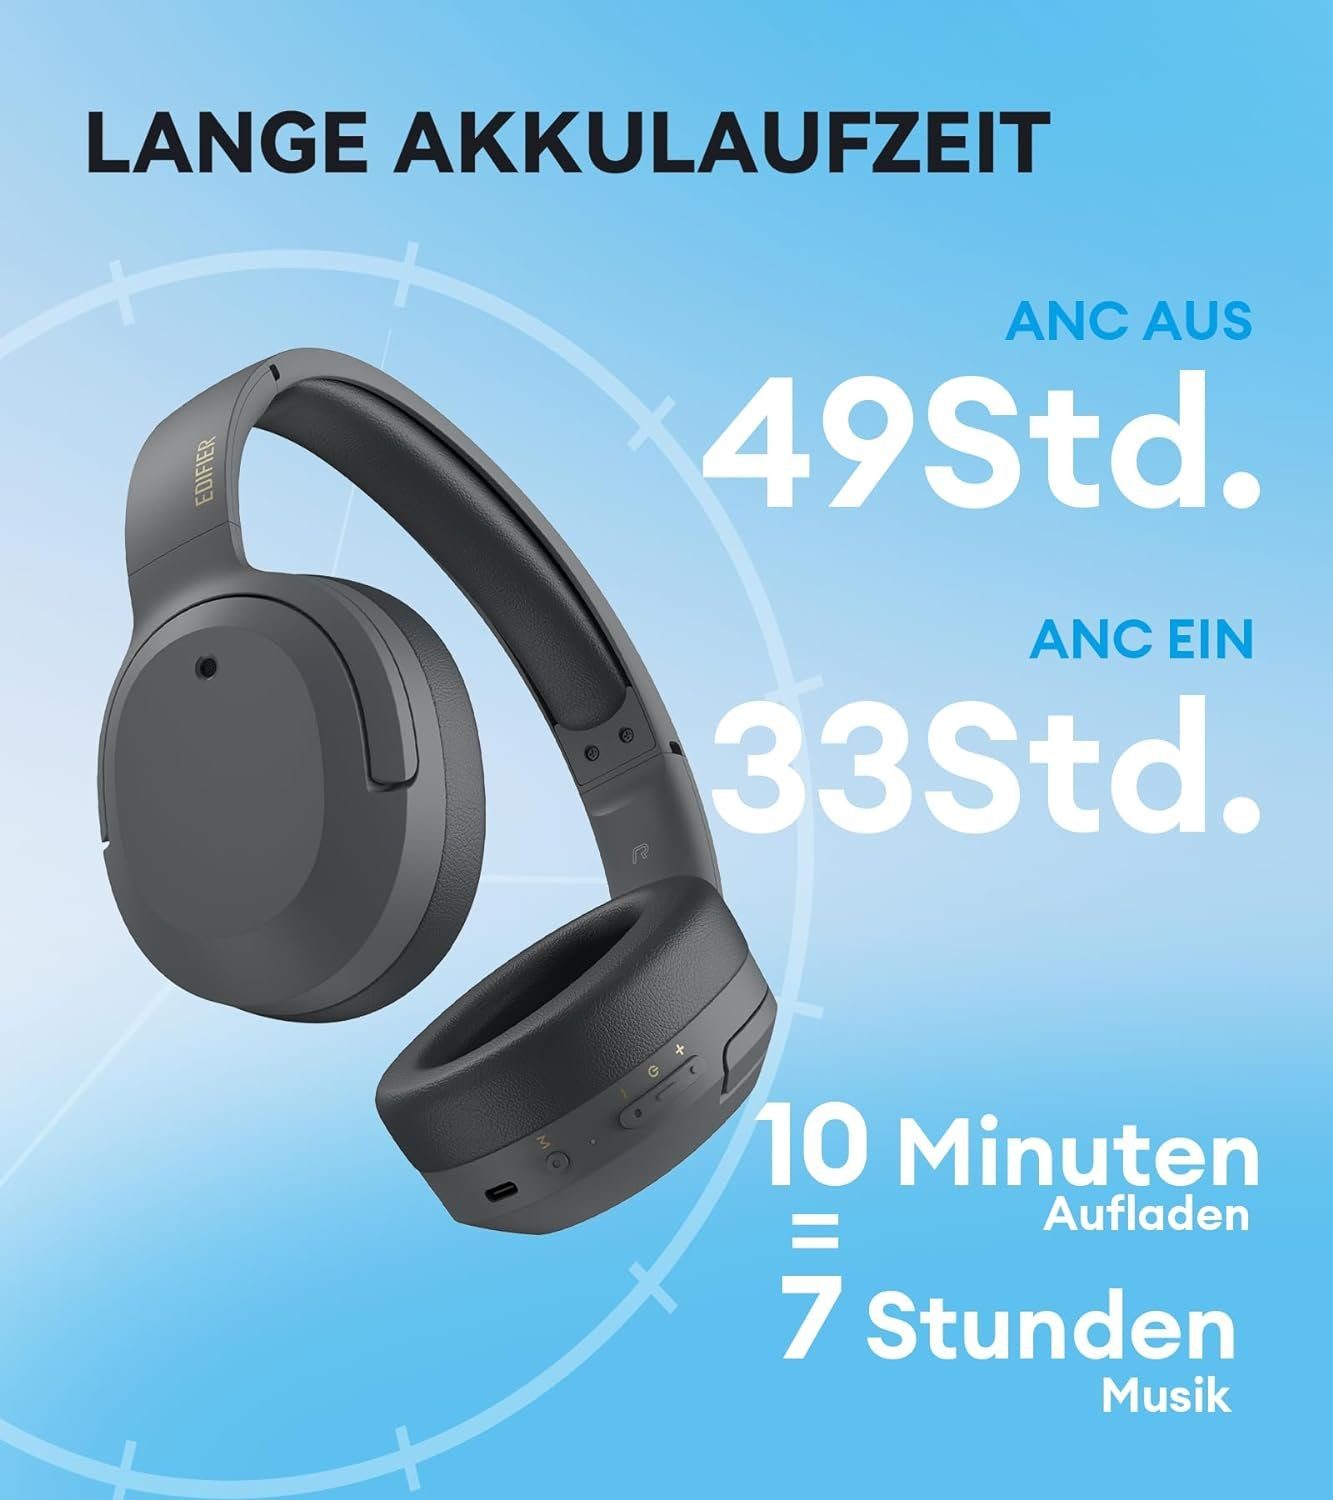 Hi-Res von Bluetooth, Edifier® LDAC Schnelllade 49 Gaming-Headset Korrektur Audio & Stunden Umgebungsgeräuschen, Spielzeit) Wireless Wired (Automatische Erkennung und